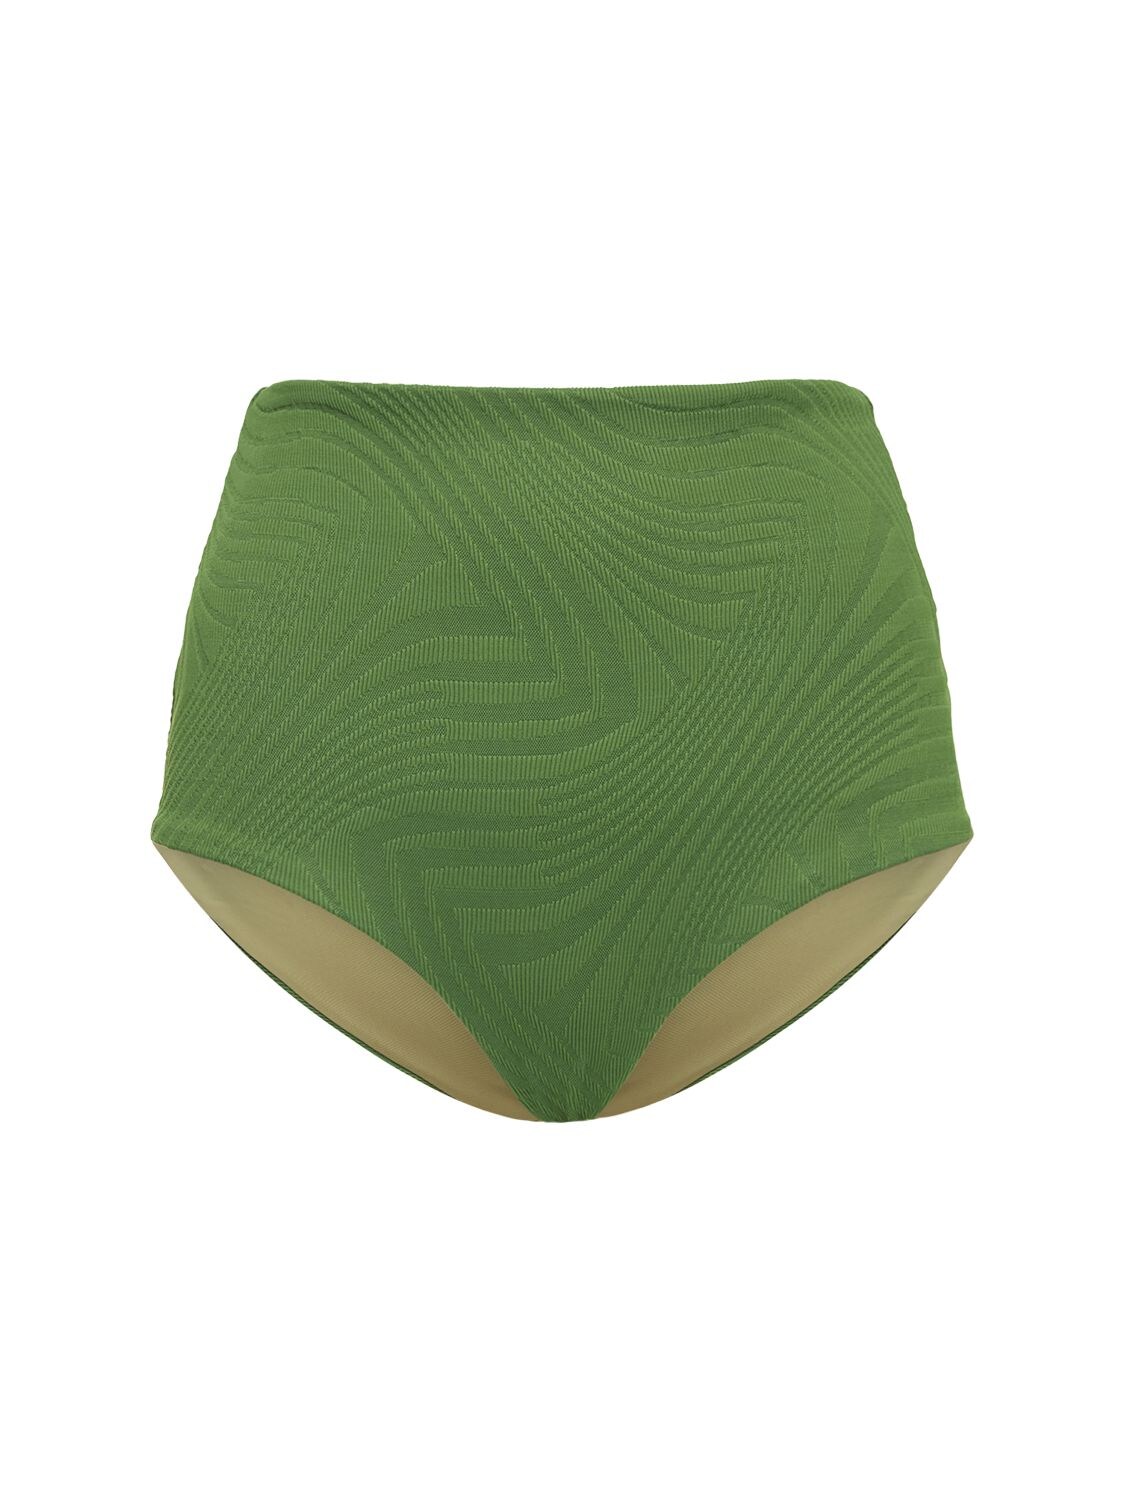 Fella Swim Marco Bikini Bottom In Green